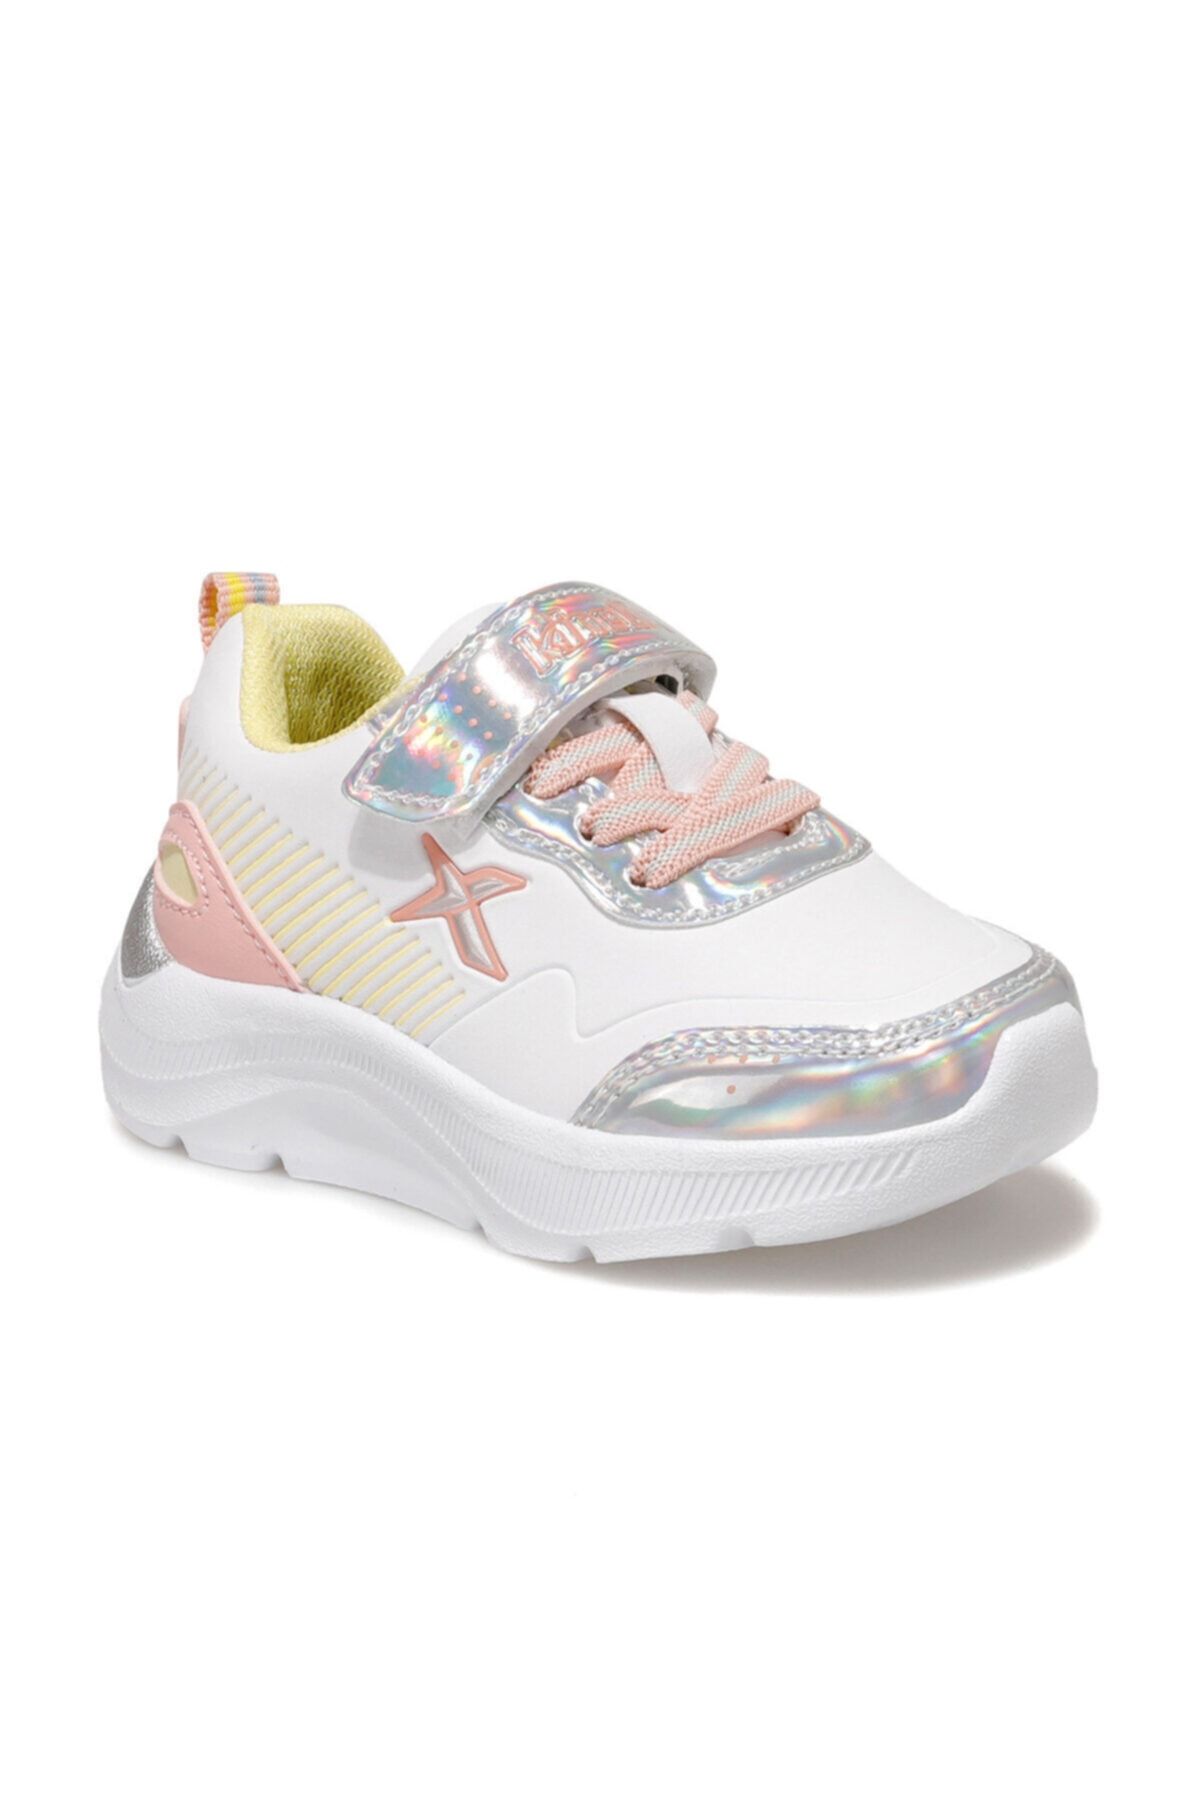 Kinetix ROARS Beyaz Kız Çocuk Yürüyüş Ayakkabısı 100534418